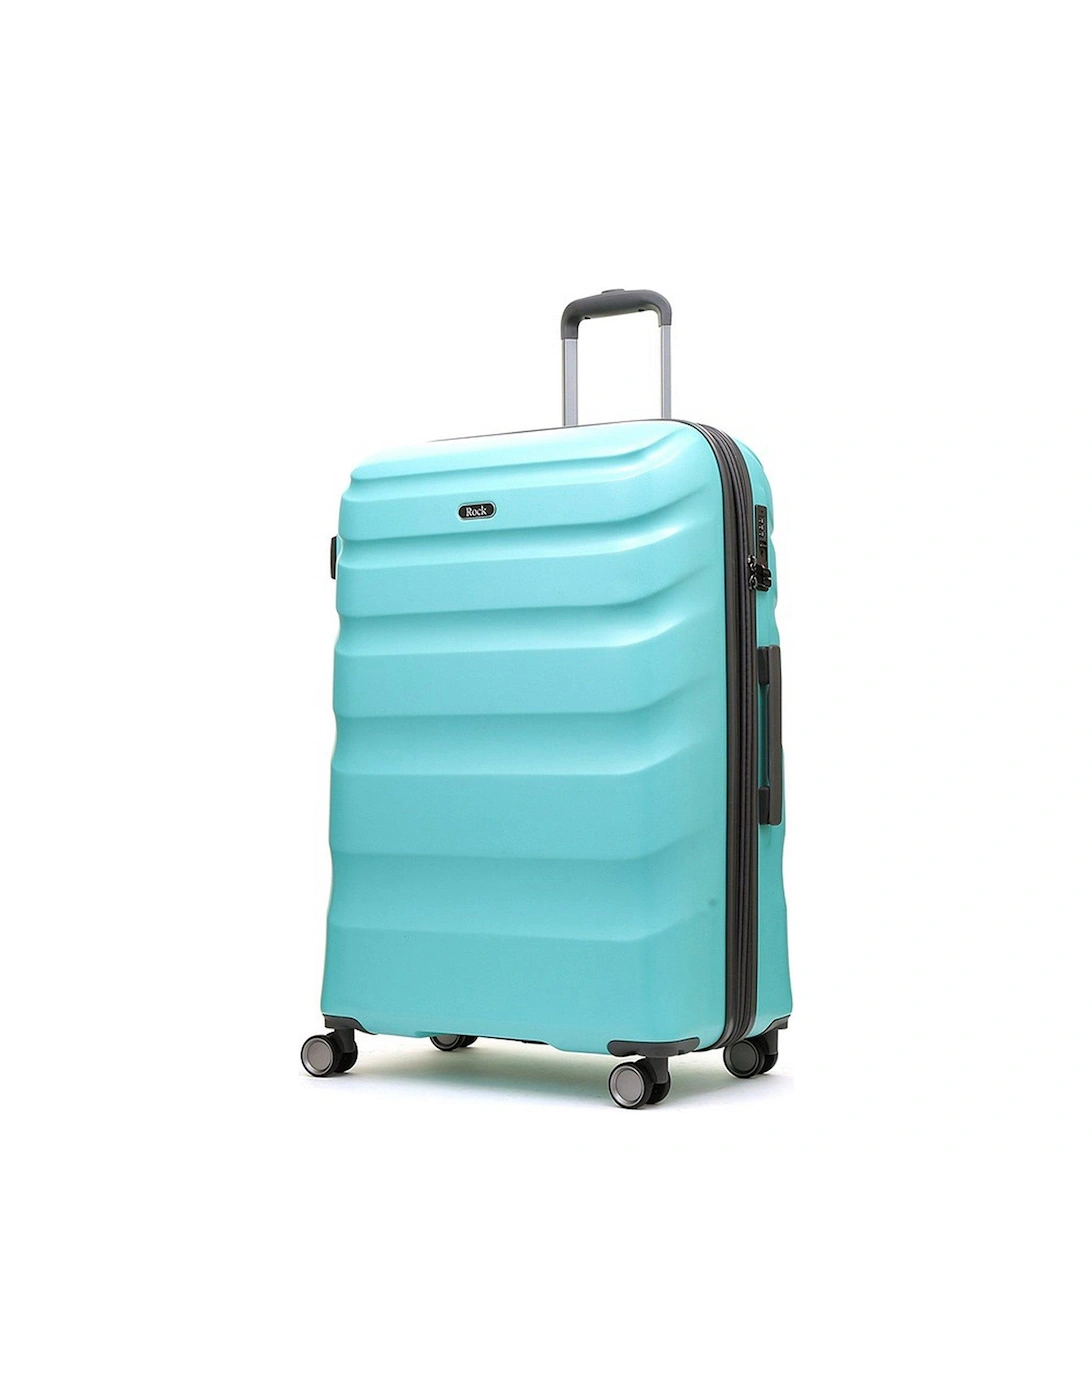 Bali 8 Wheel Hardshell Large Suitcase - Turquoise, 3 of 2